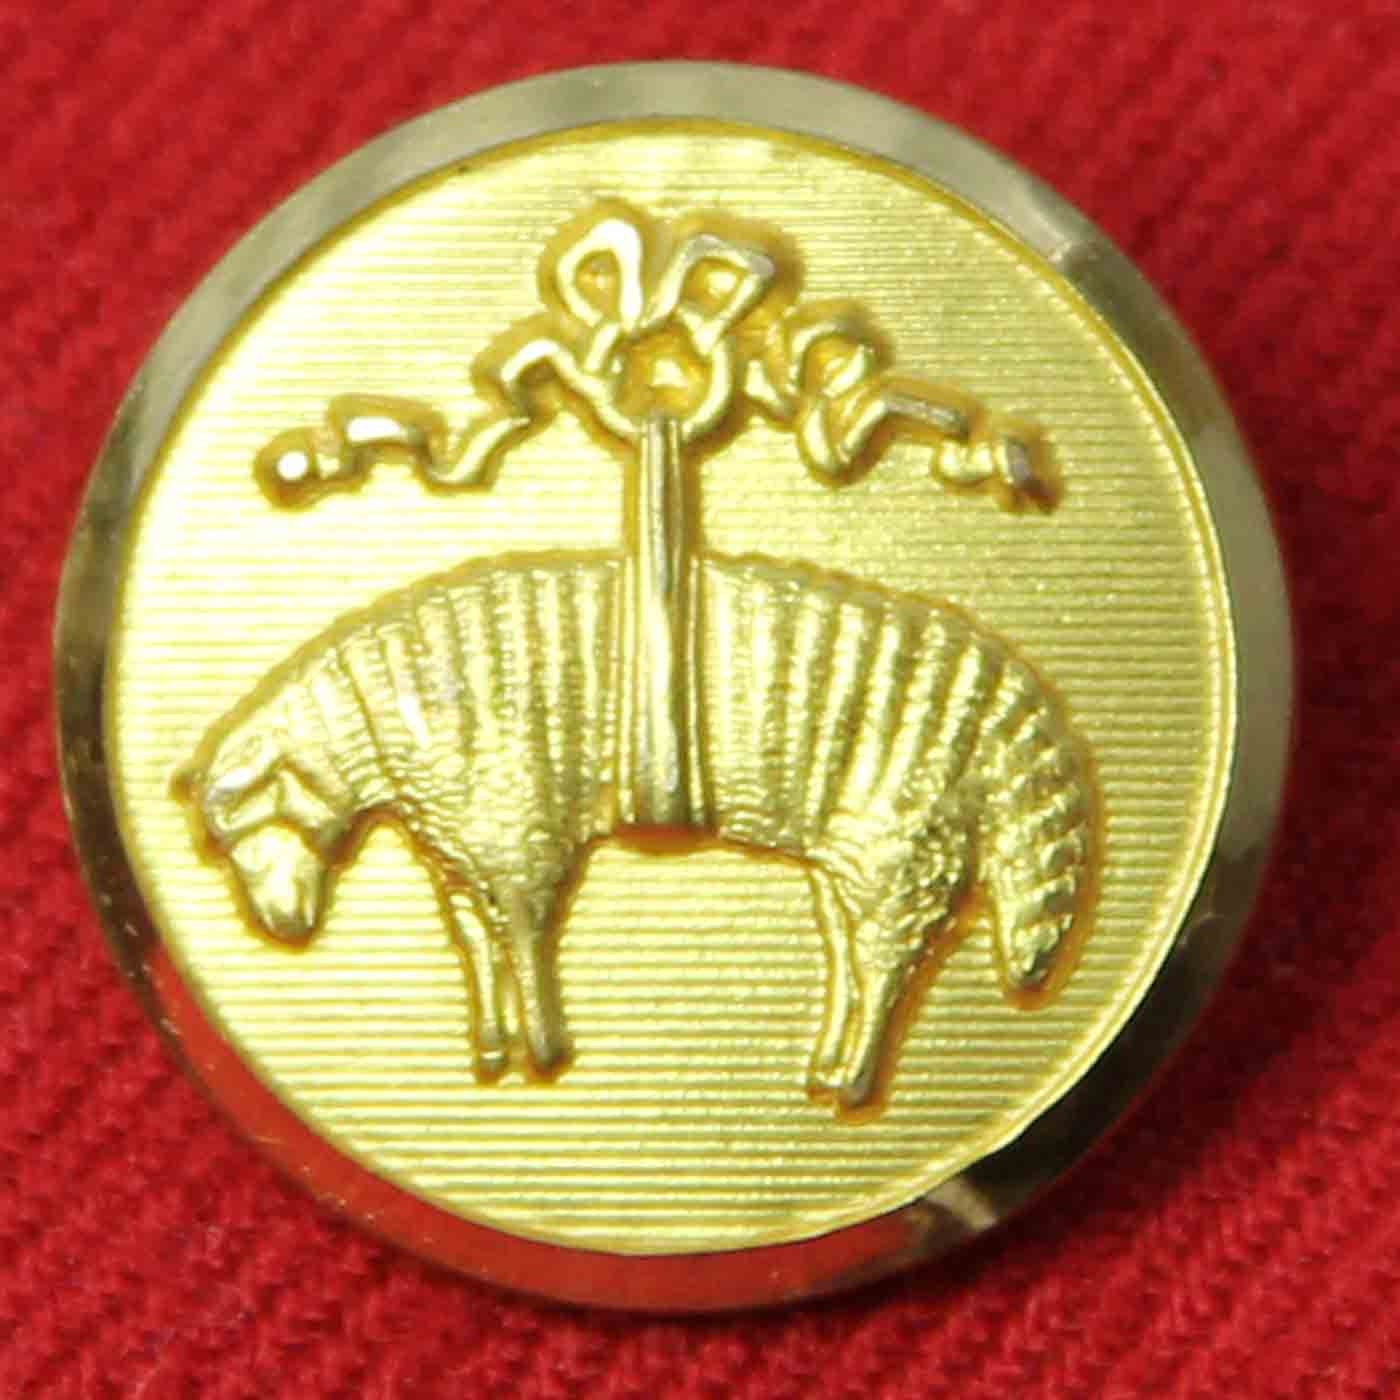 Men's Brooks Brothers Blazer Button Golden Fleece Emblem